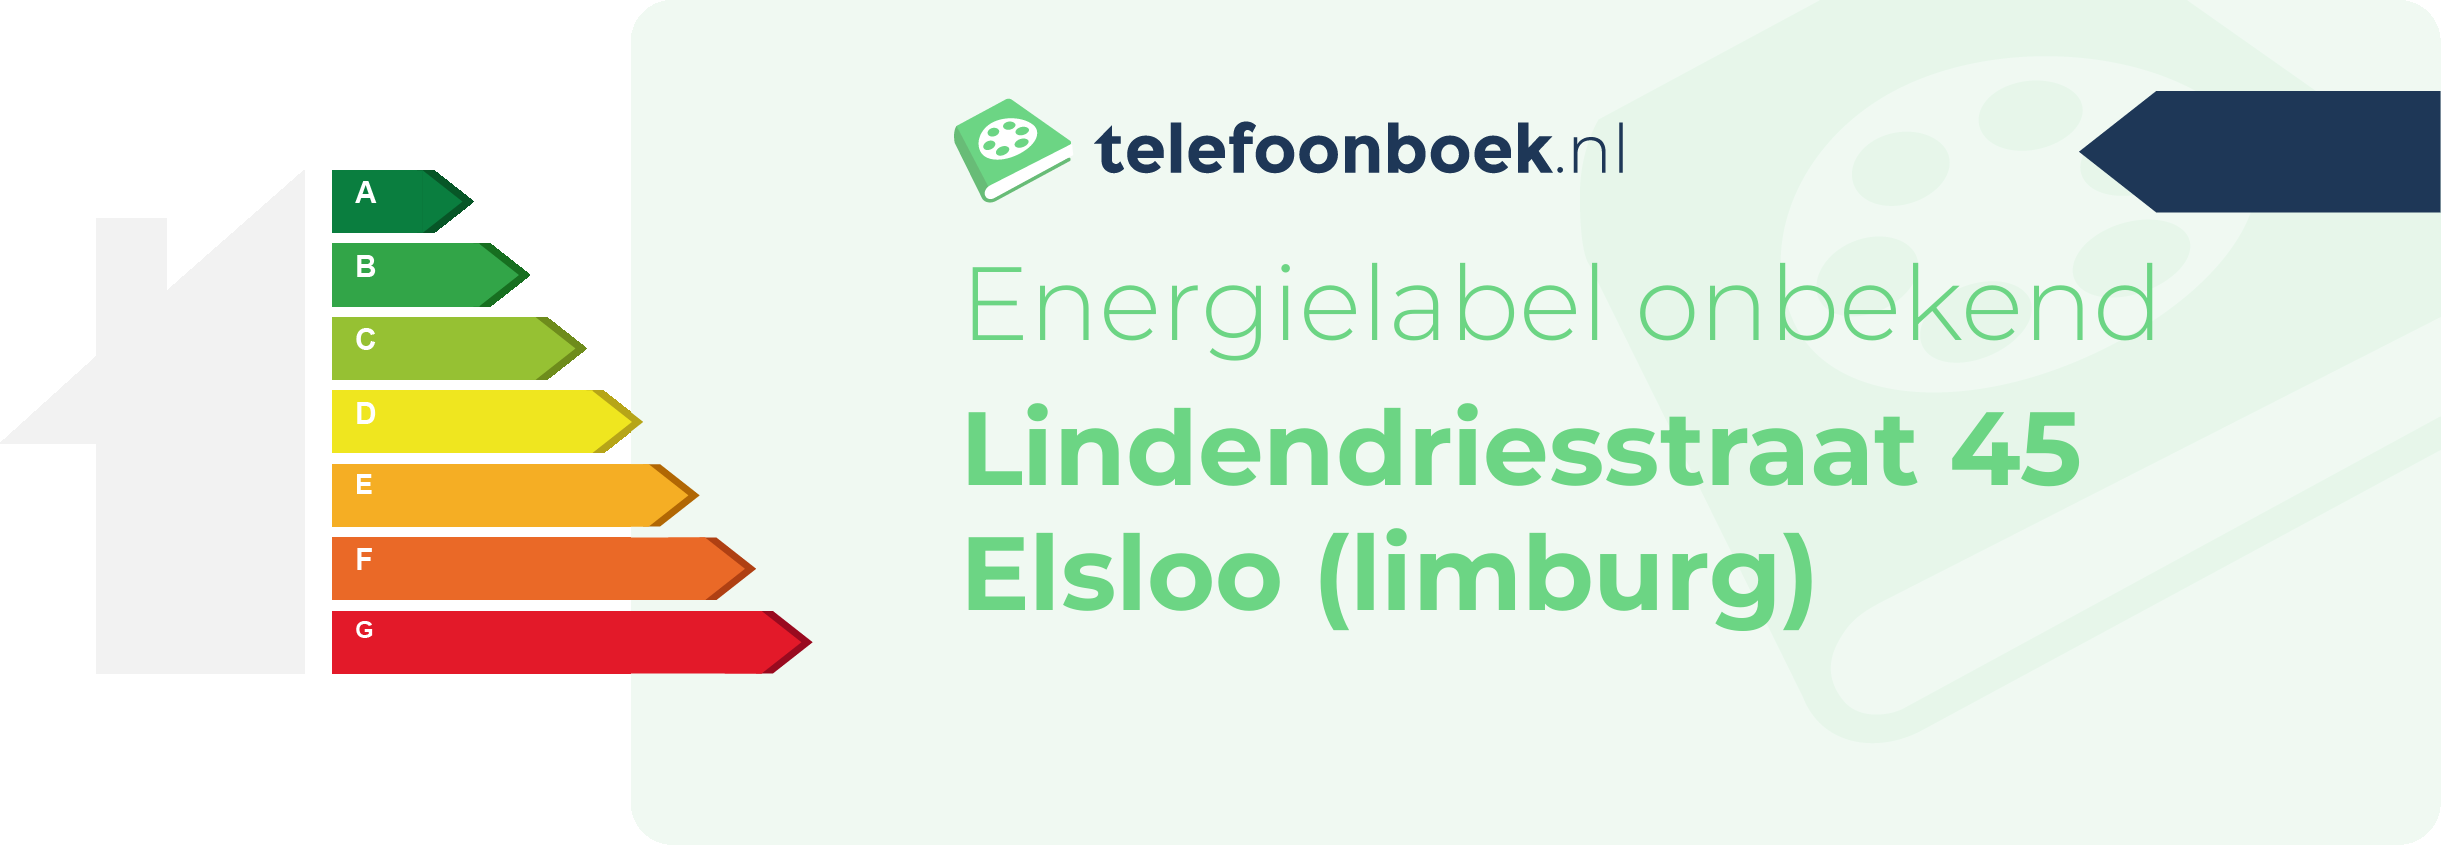 Energielabel Lindendriesstraat 45 Elsloo (Limburg)